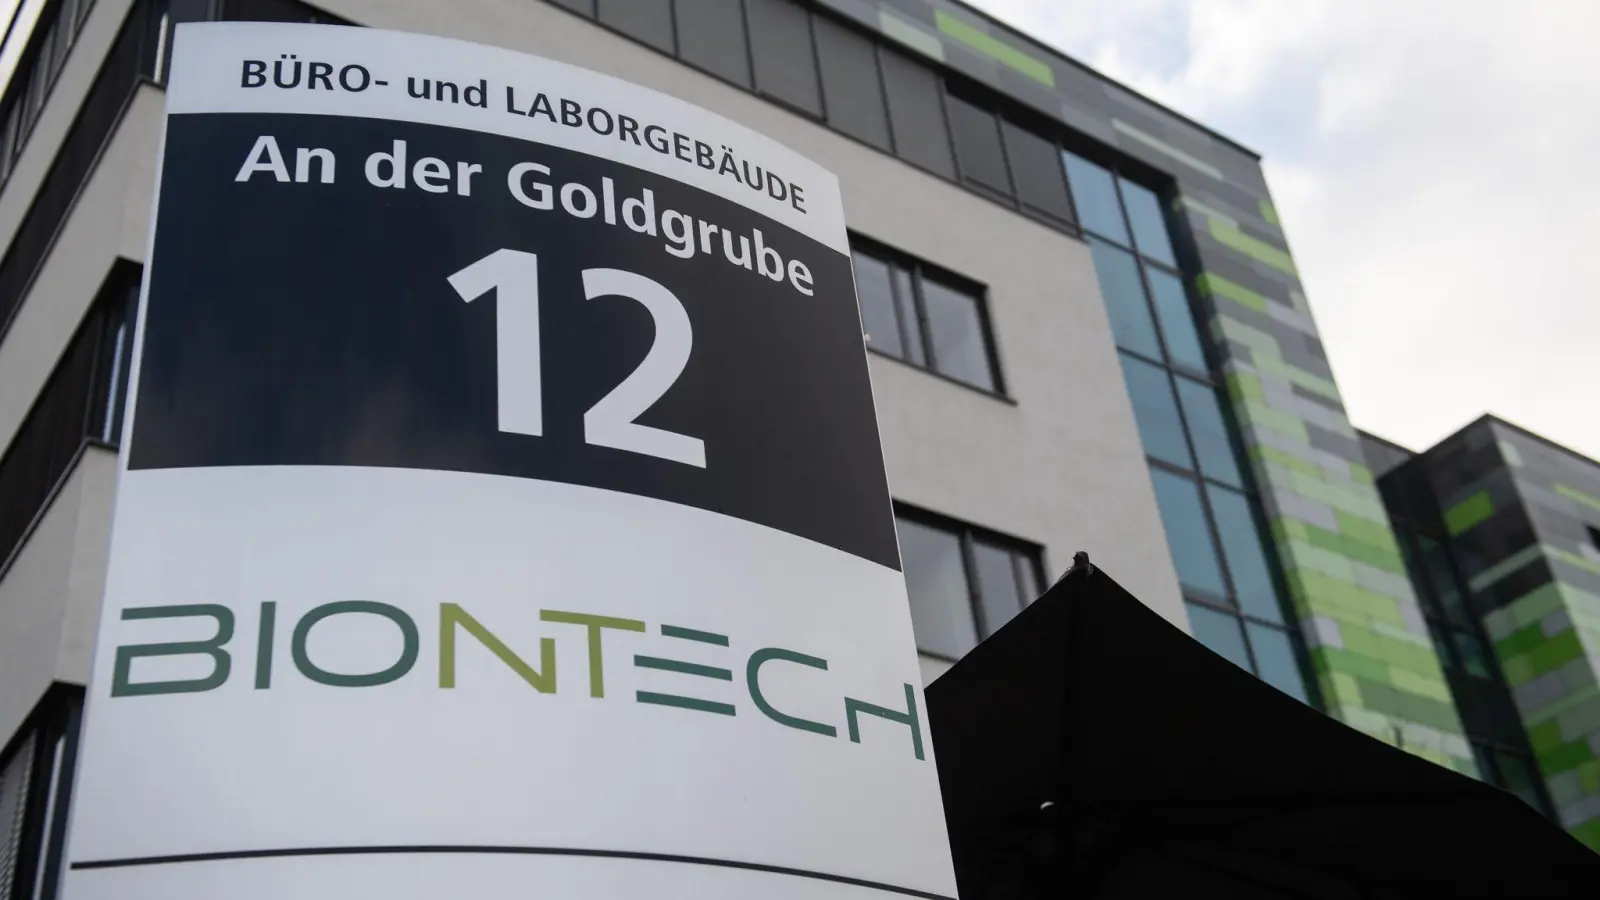 Das Mainzer Unternehmen Biontech legt neue Geschäftszahlen vor. (Foto: Julia Cebella/dpa)